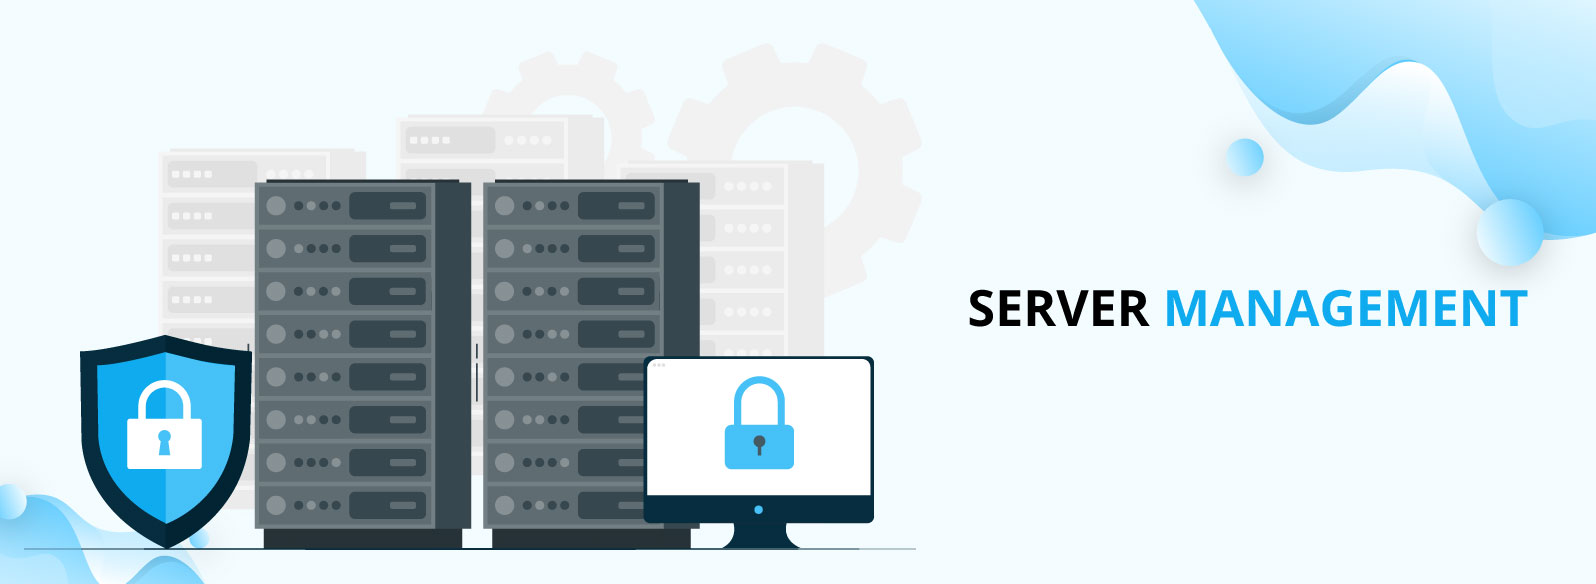 Server Management and DevOps